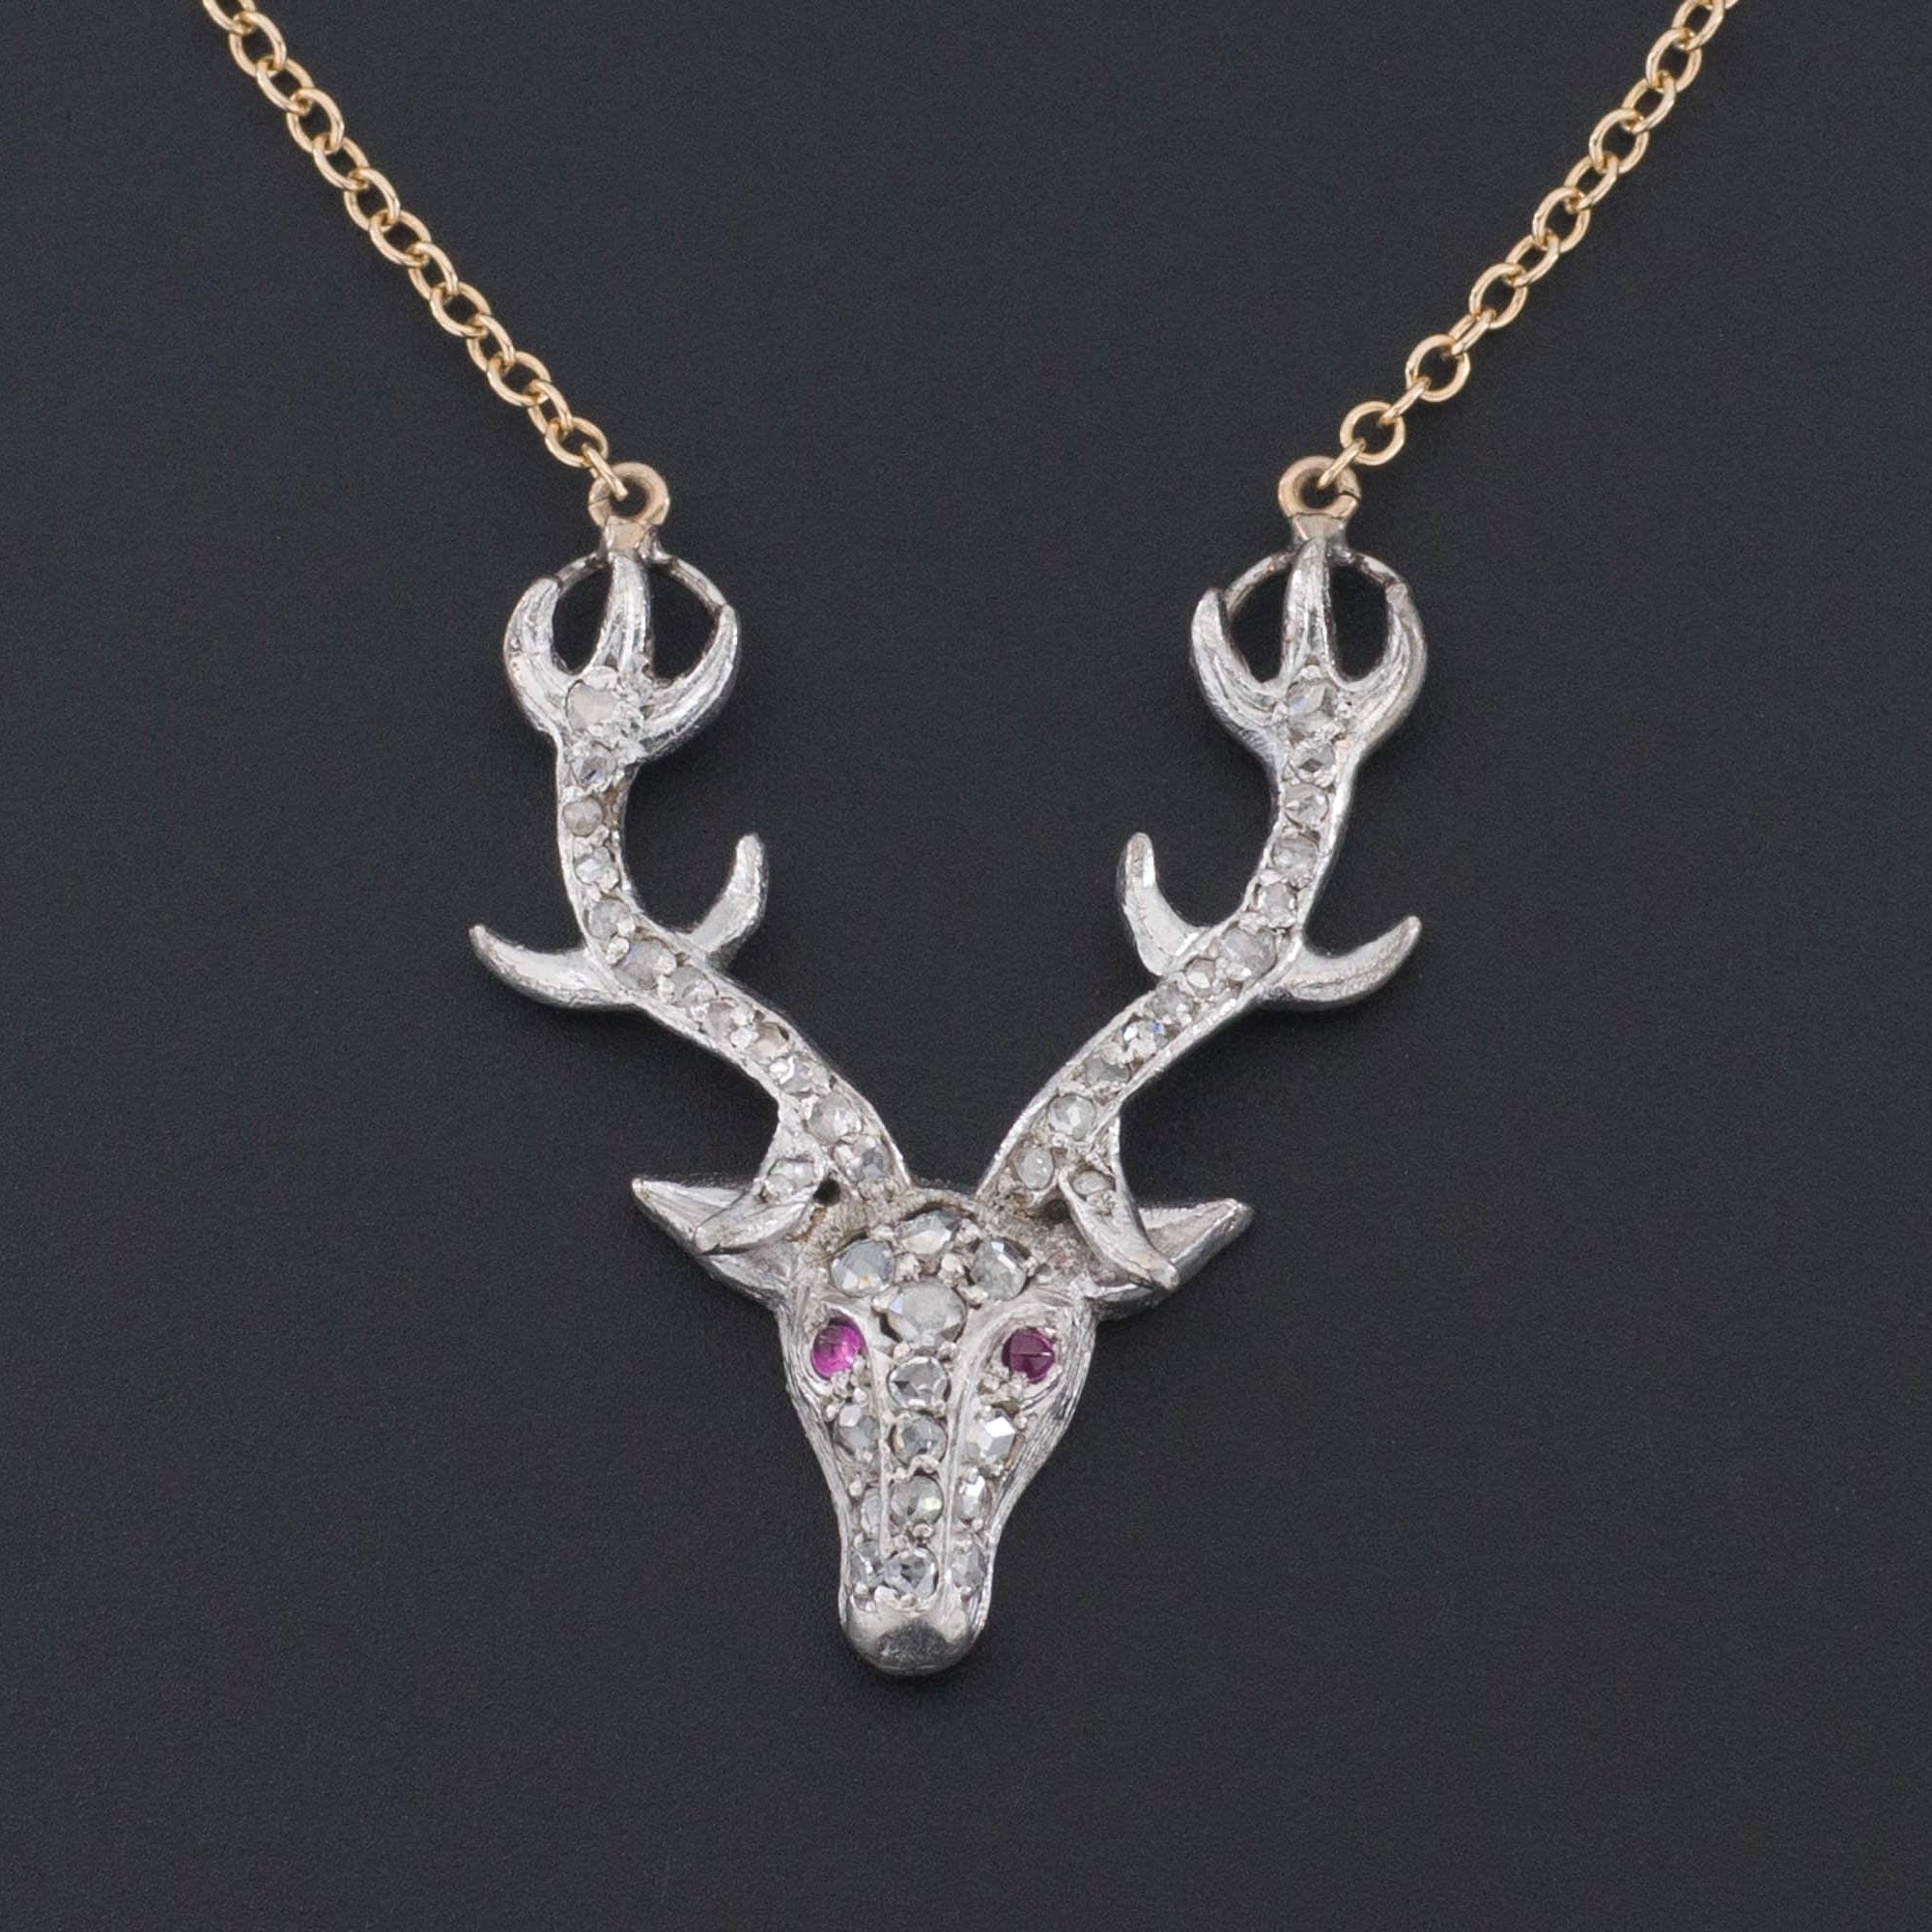 Deer or Stag Necklace | 14k Gold & Platinum Stag Necklace 